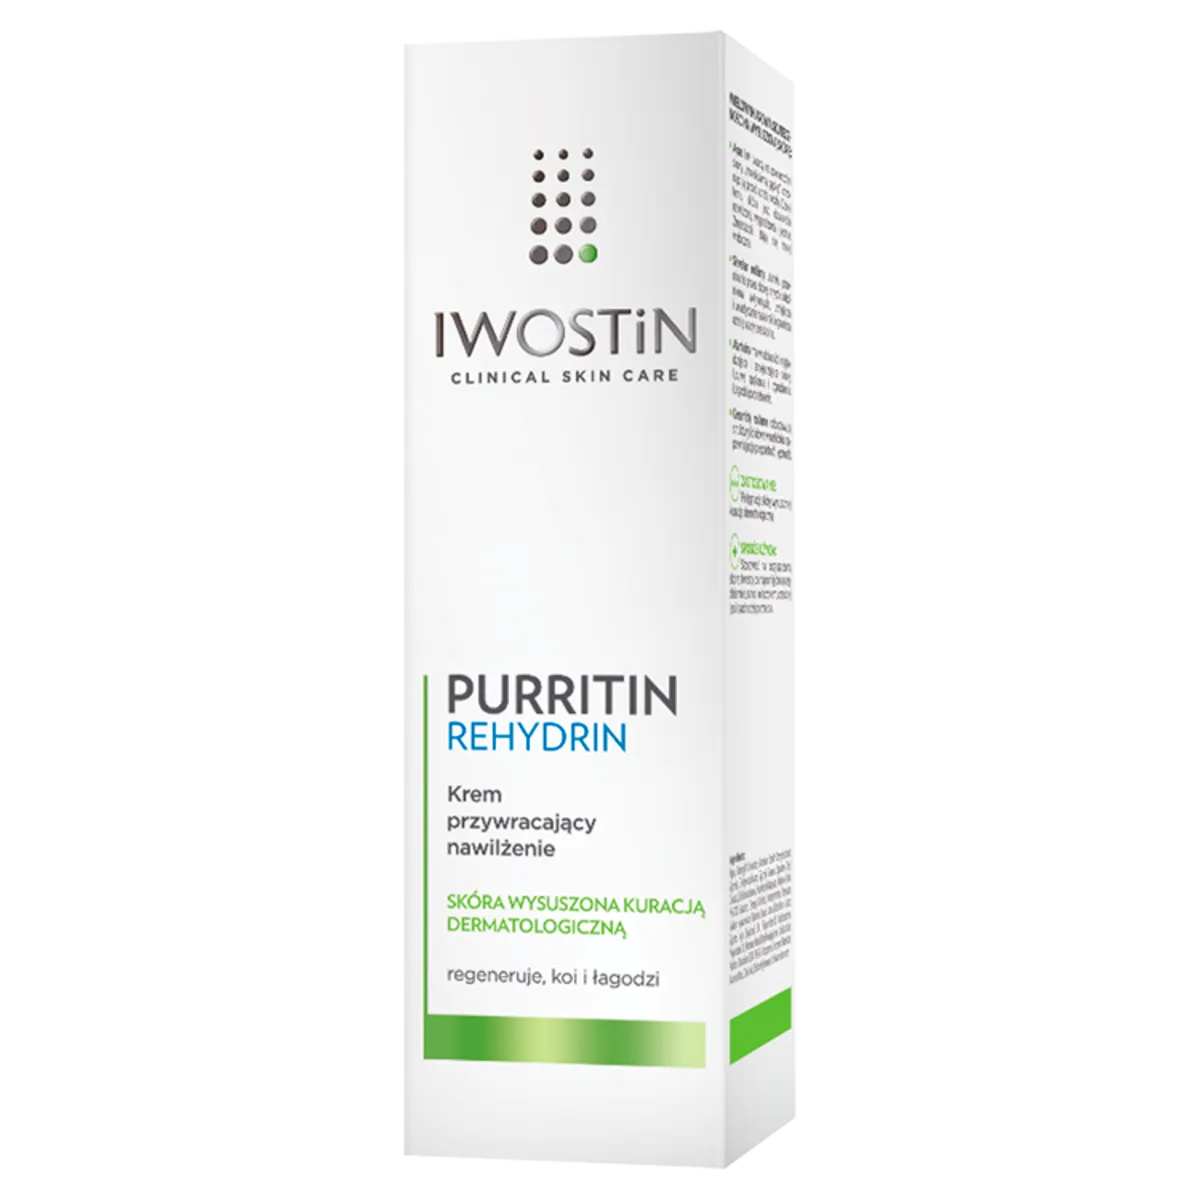 Iwostin Purritin Rehydrin - krem przywracający nawilżenie, 40 ml 